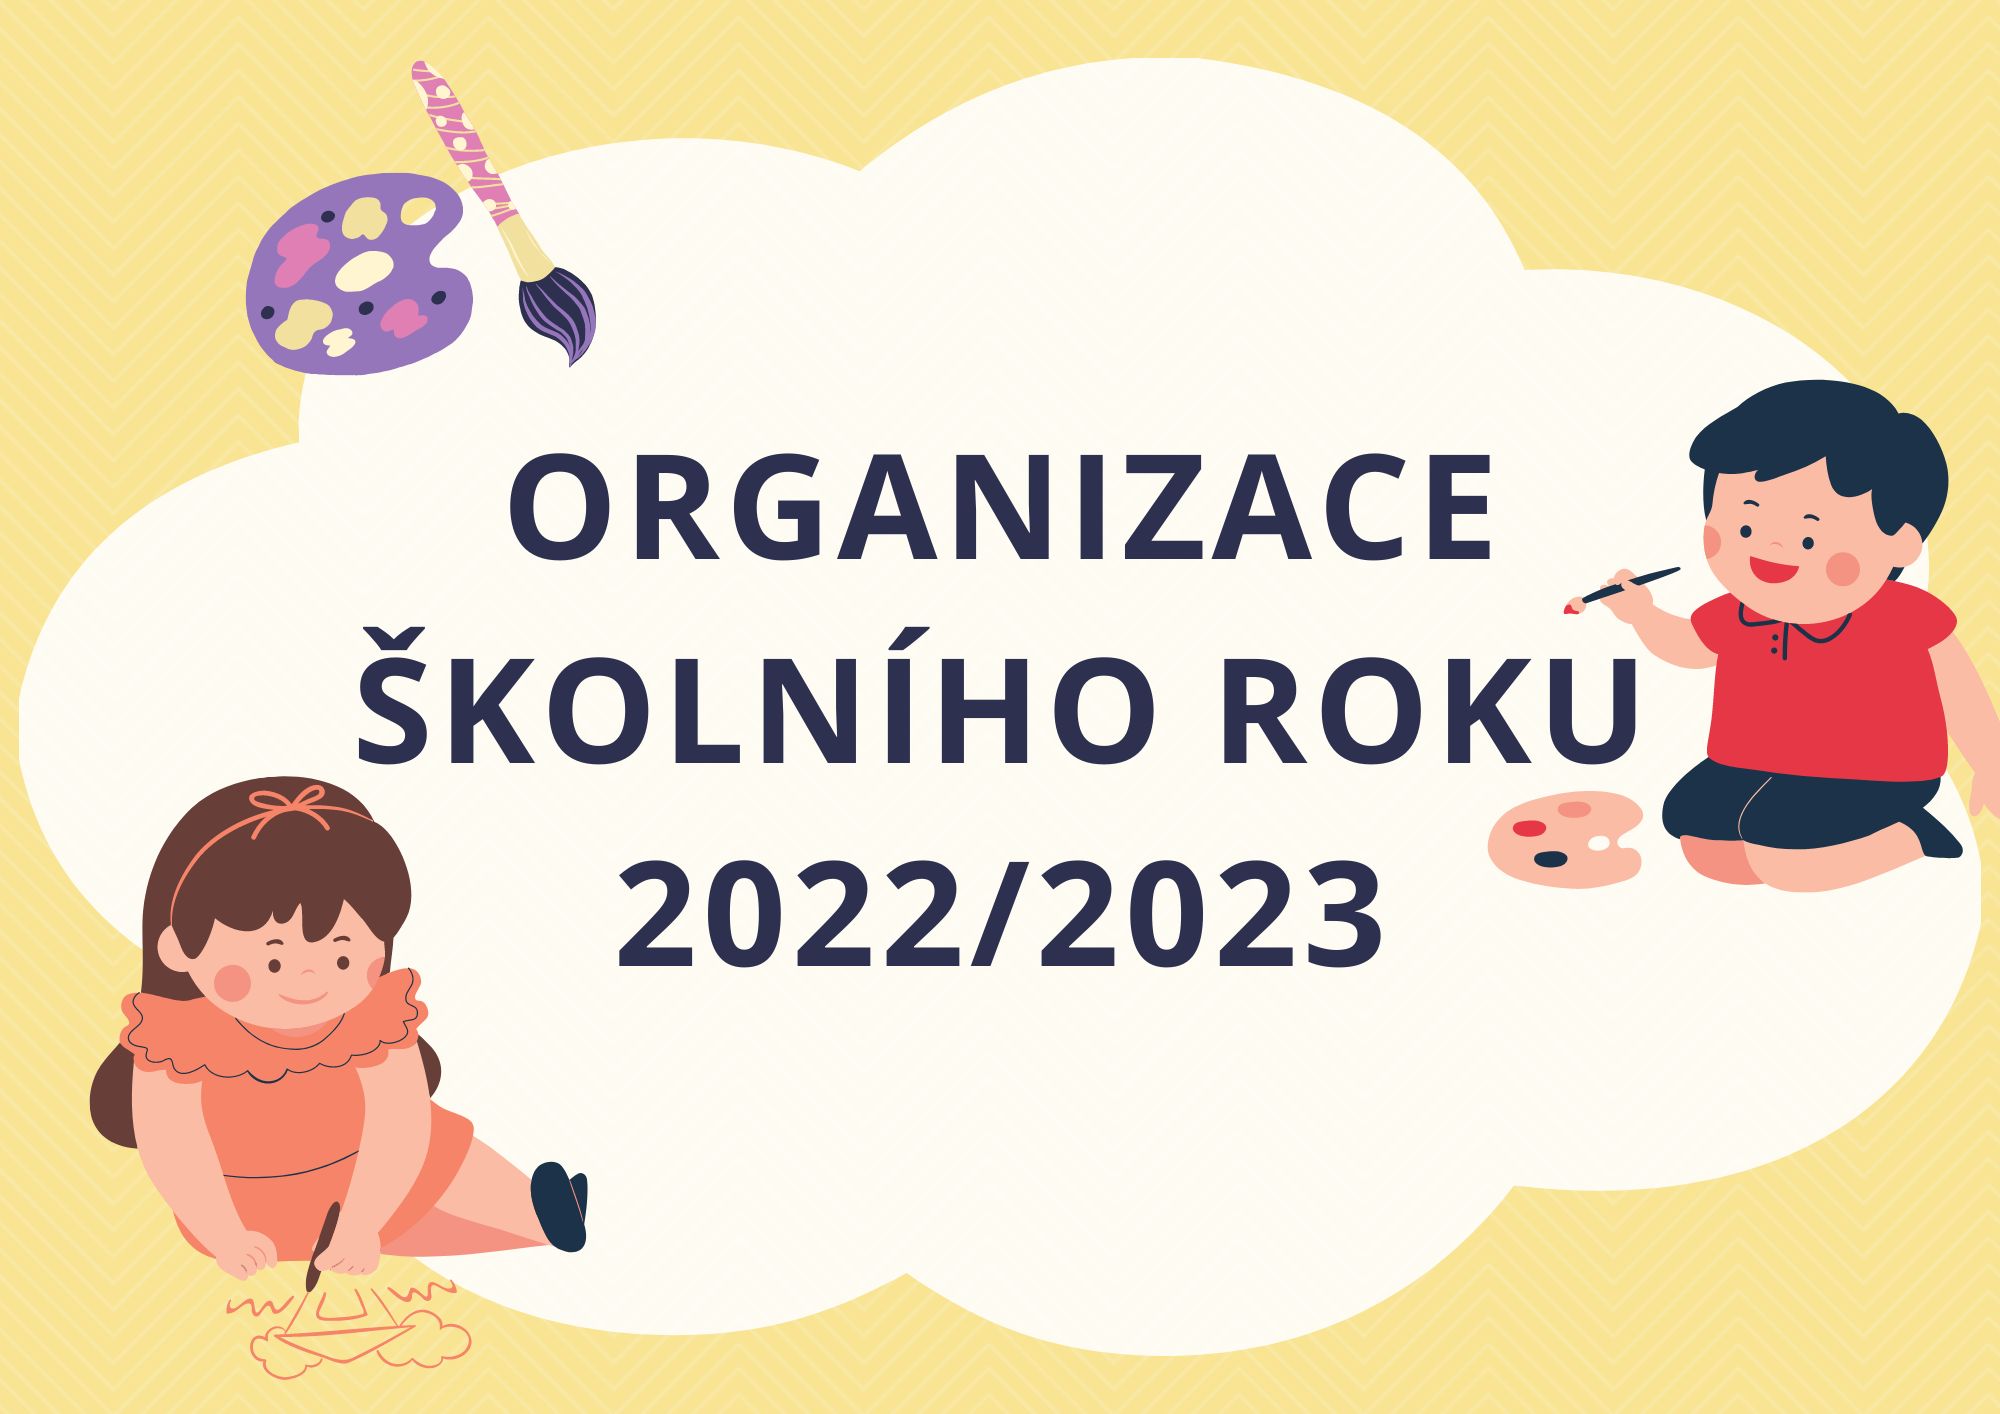 Foto: Organizace školního roku 2022/2023